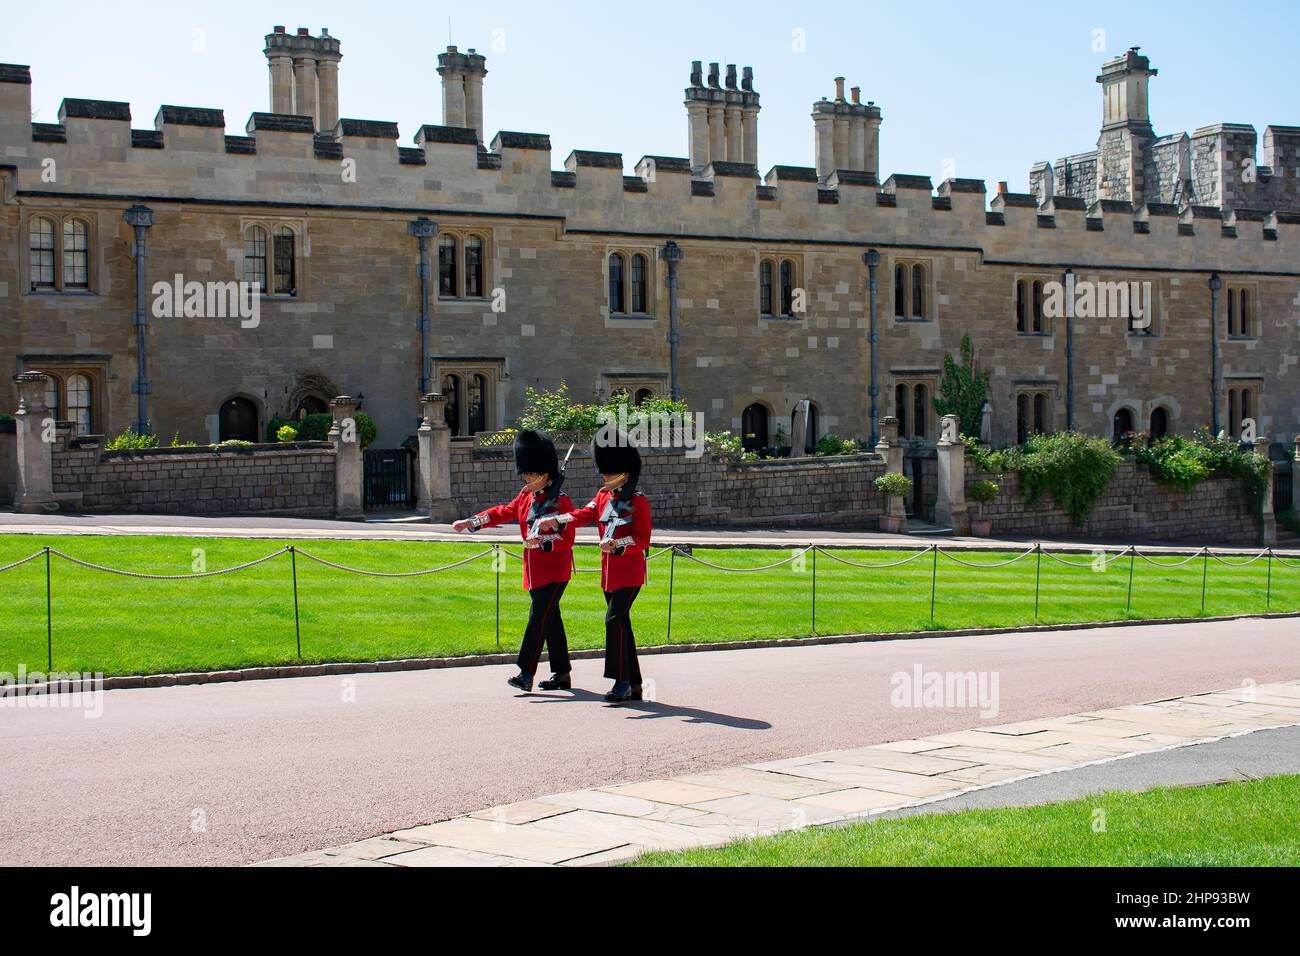 Deux gardes du château de Windsor portant des uniformes rouges et des barbes défilent sur le chemin, passant devant les résidences des Chevaliers militaires du gouverneur. Windsor, Royaume-Uni. Banque D'Images